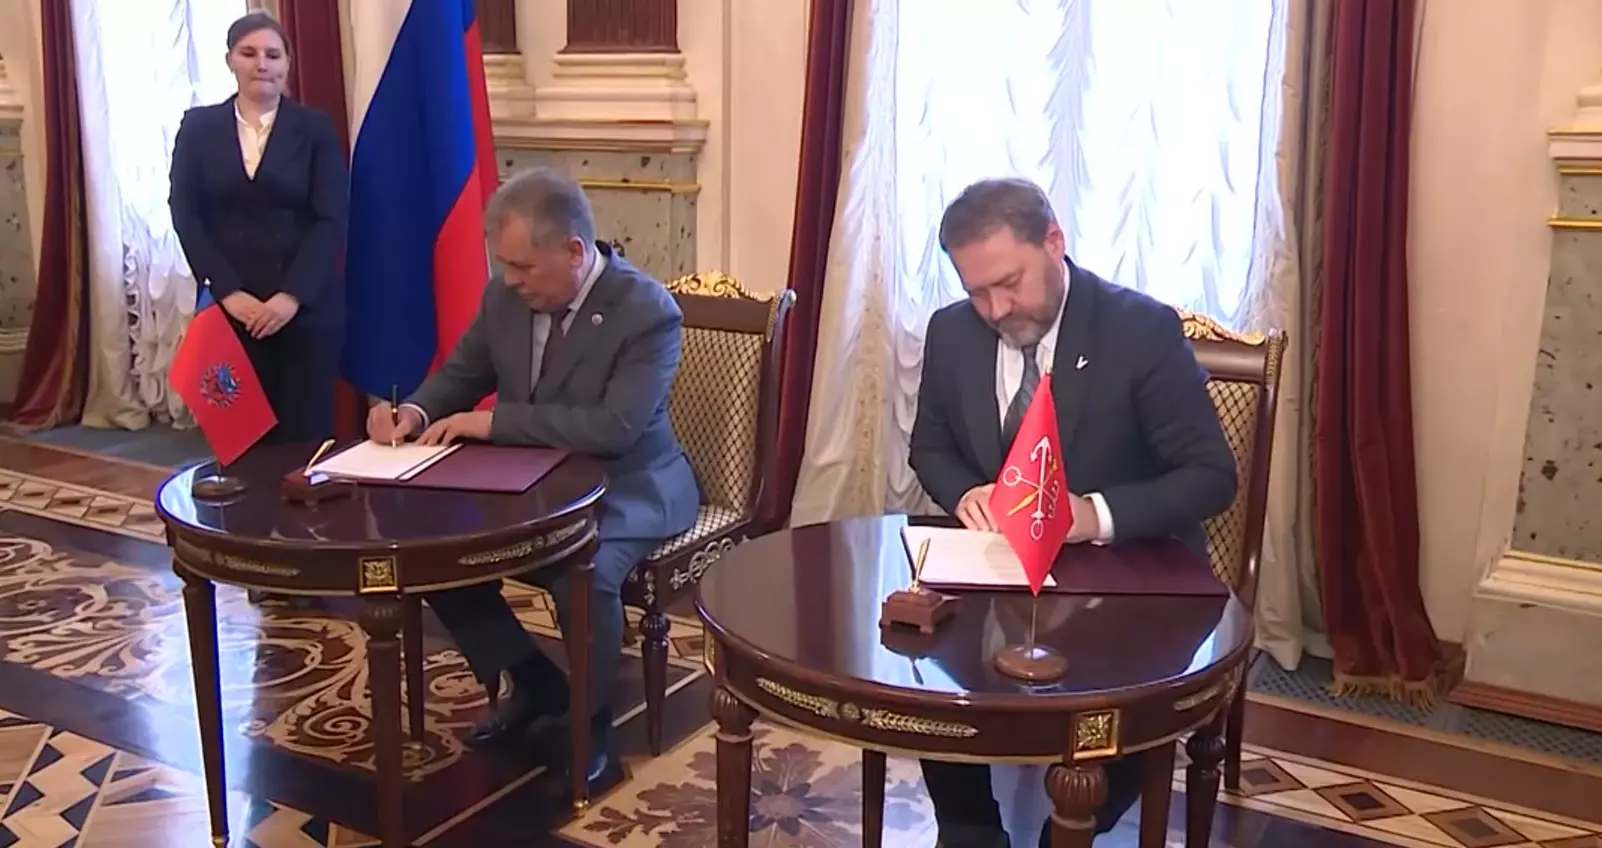 Новый договор о сотрудничестве сегодня подписали главы Заксобраний Санкт-Петербурга и Алтайского края